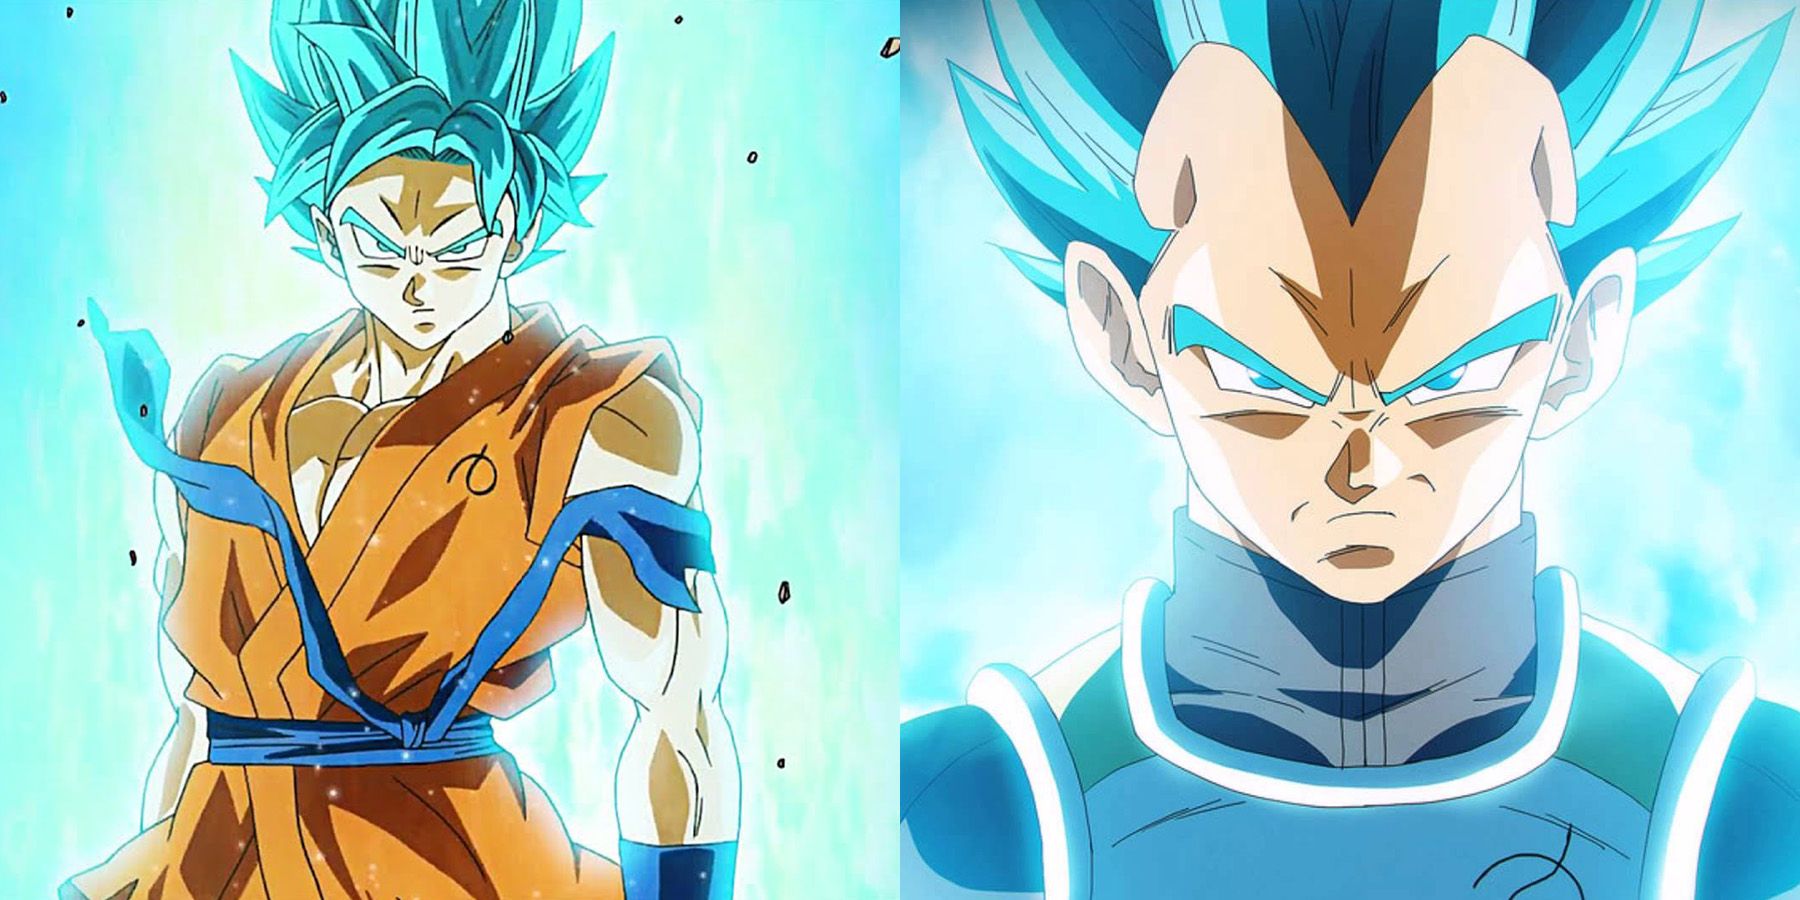 Two panels showing Super Saiyan Blue Goku and Vegeta